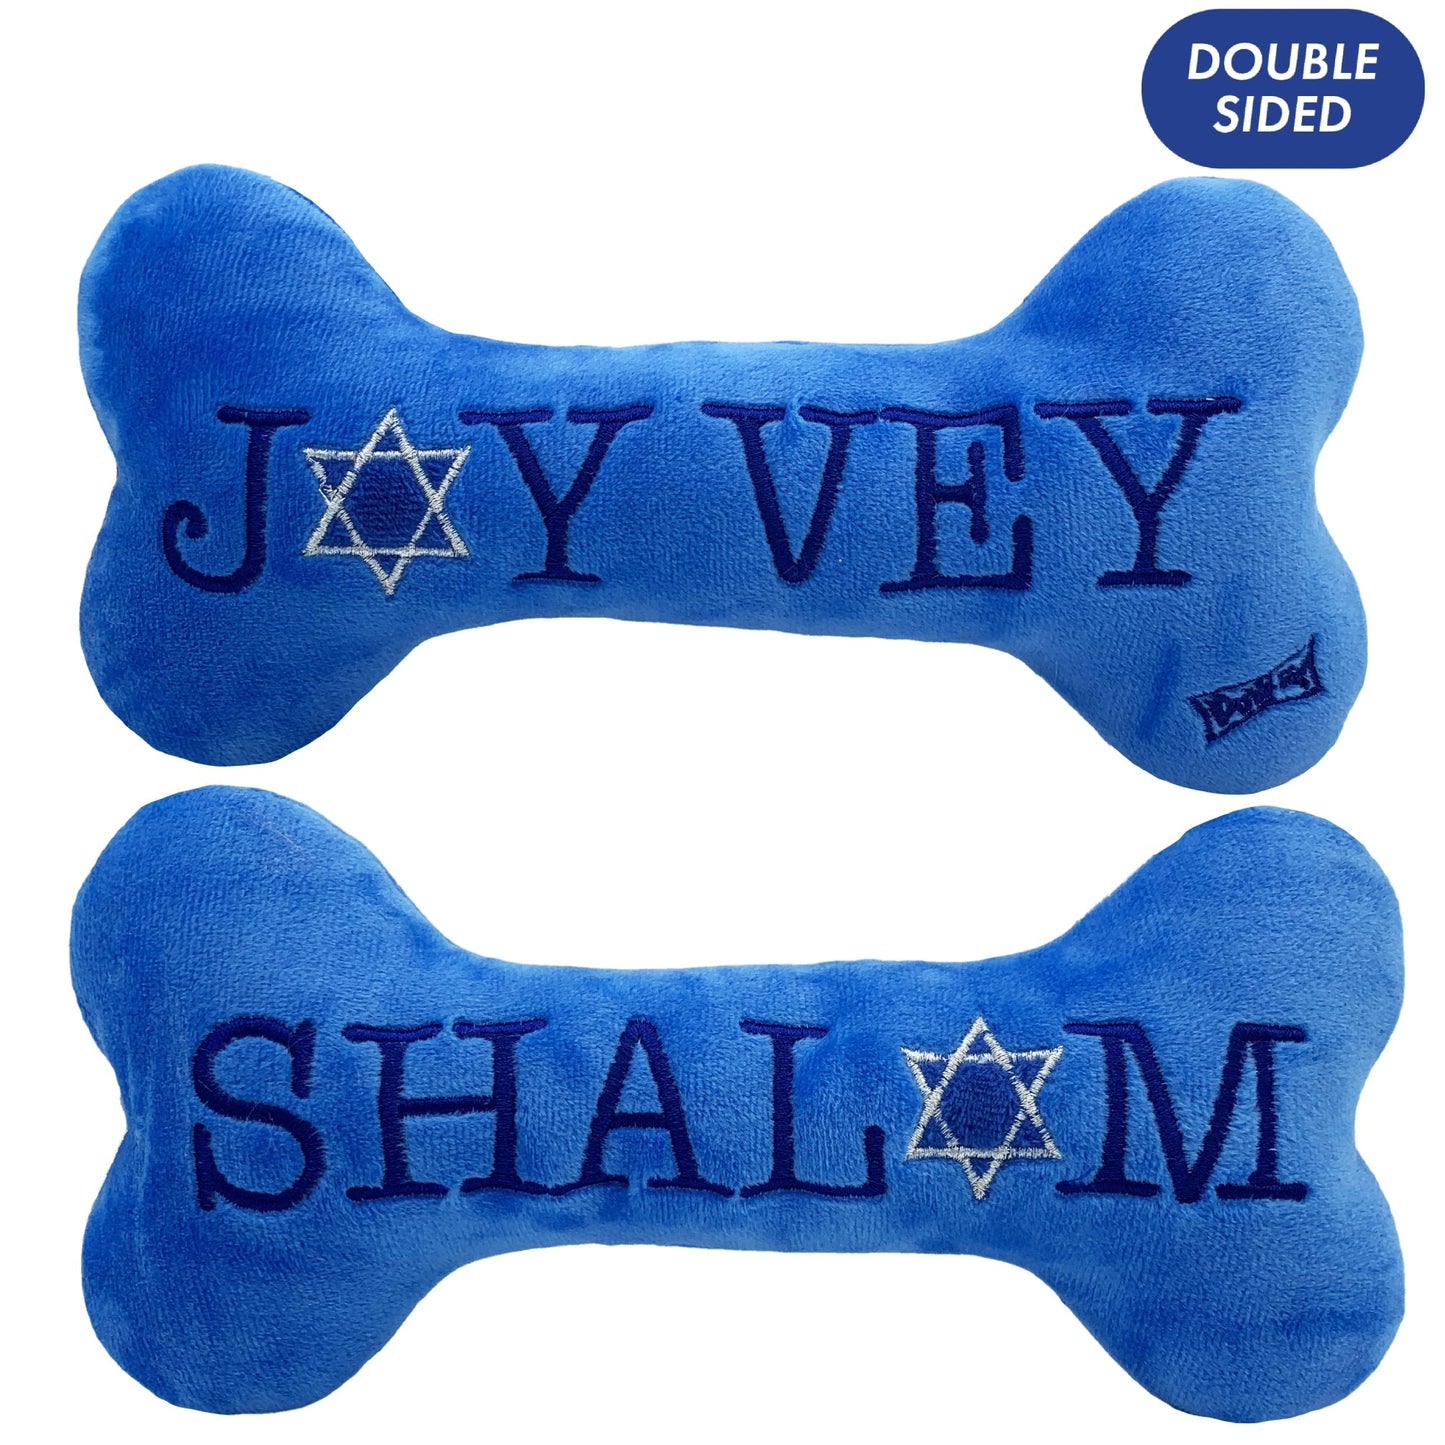 Hanukkah Joy Vey Plush Dog Bone - Large